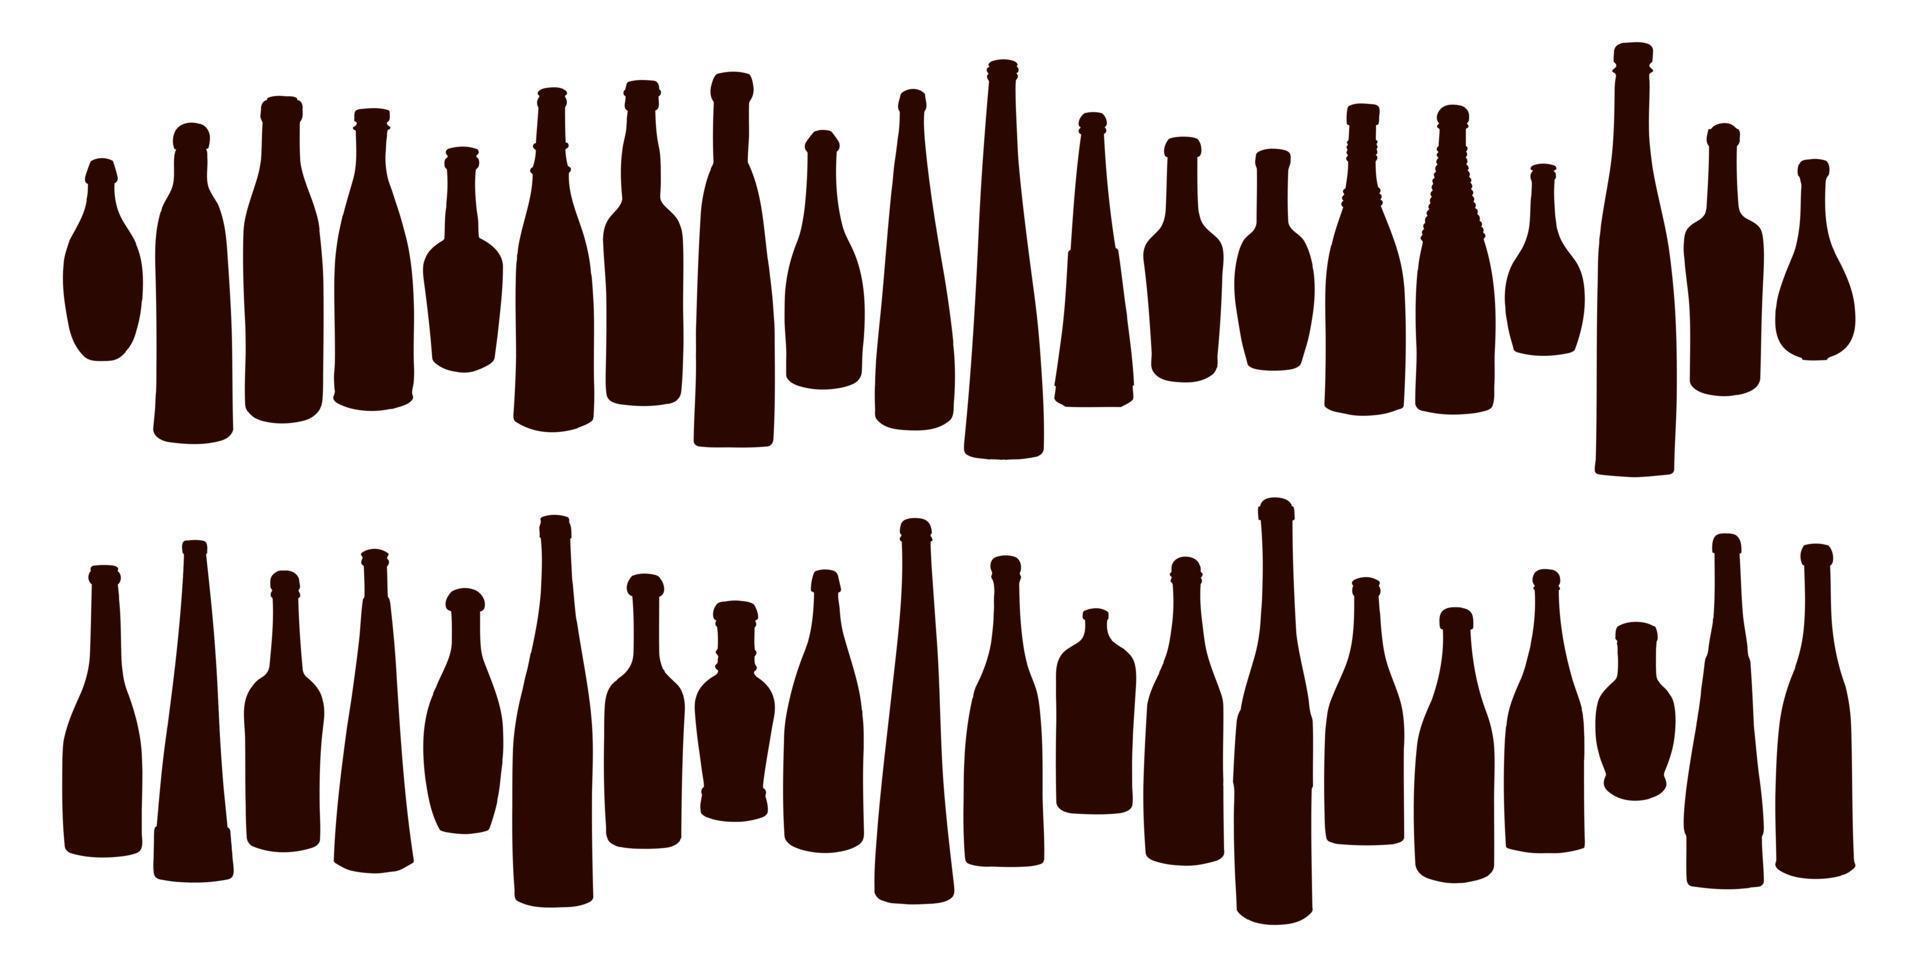 forma de silueta de botella para alcohol, cerveza, kvas, aguas. contorno de un recipiente para almacenar líquido vector